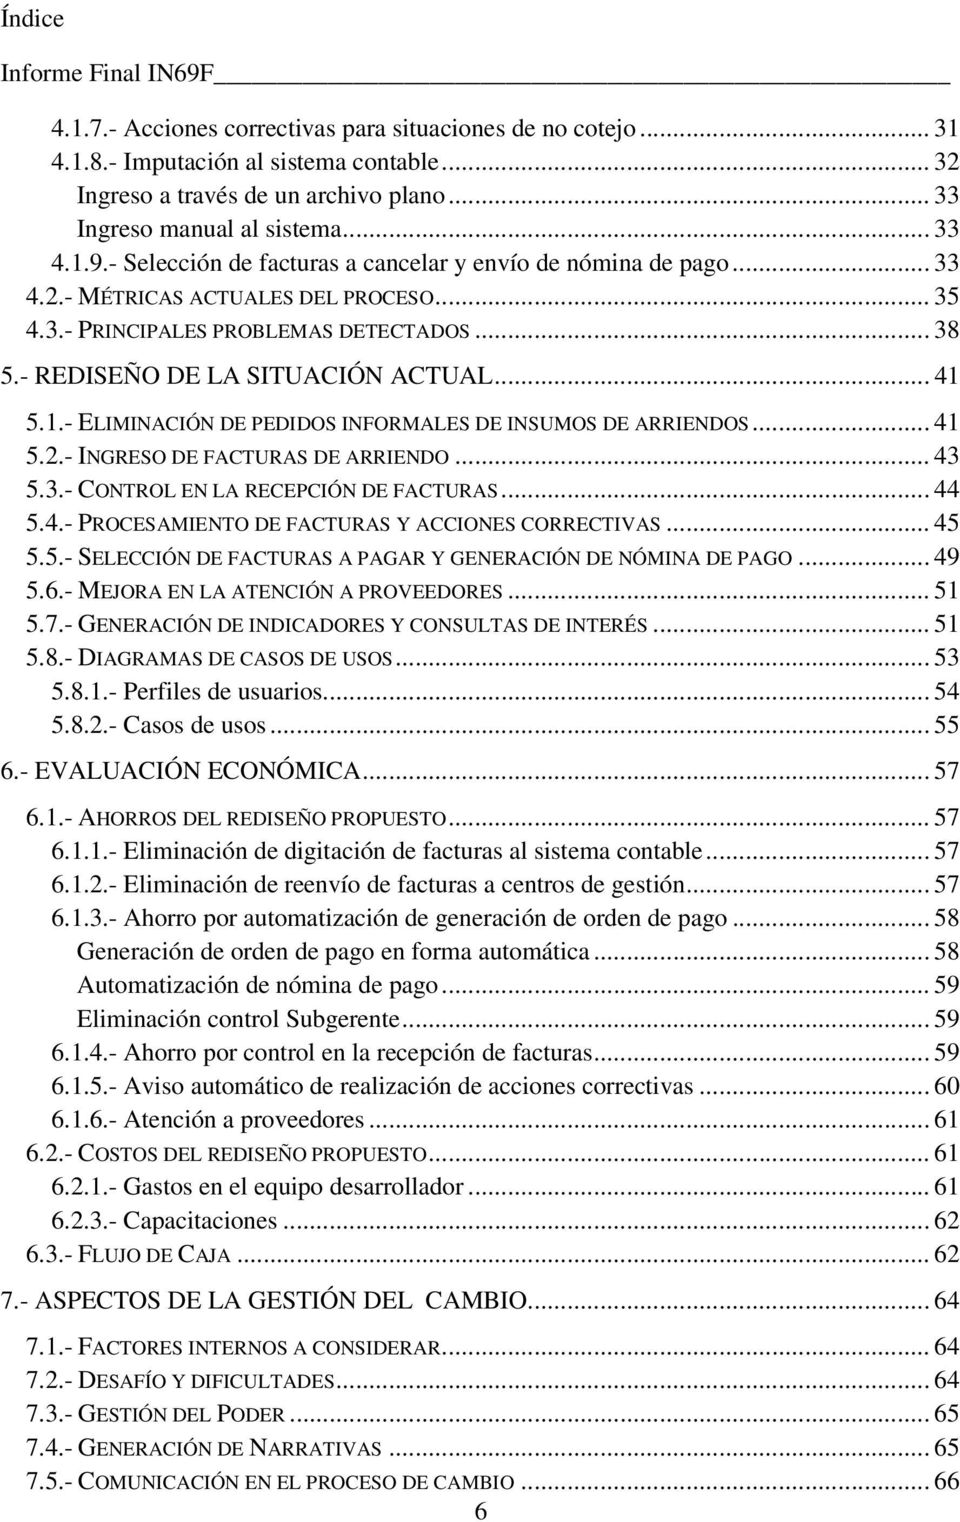 5.1.- ELIMINACIÓN DE PEDIDOS INFORMALES DE INSUMOS DE ARRIENDOS... 41 5.2.- INGRESO DE FACTURAS DE ARRIENDO... 43 5.3.- CONTROL EN LA RECEPCIÓN DE FACTURAS... 44 5.4.- PROCESAMIENTO DE FACTURAS Y ACCIONES CORRECTIVAS.